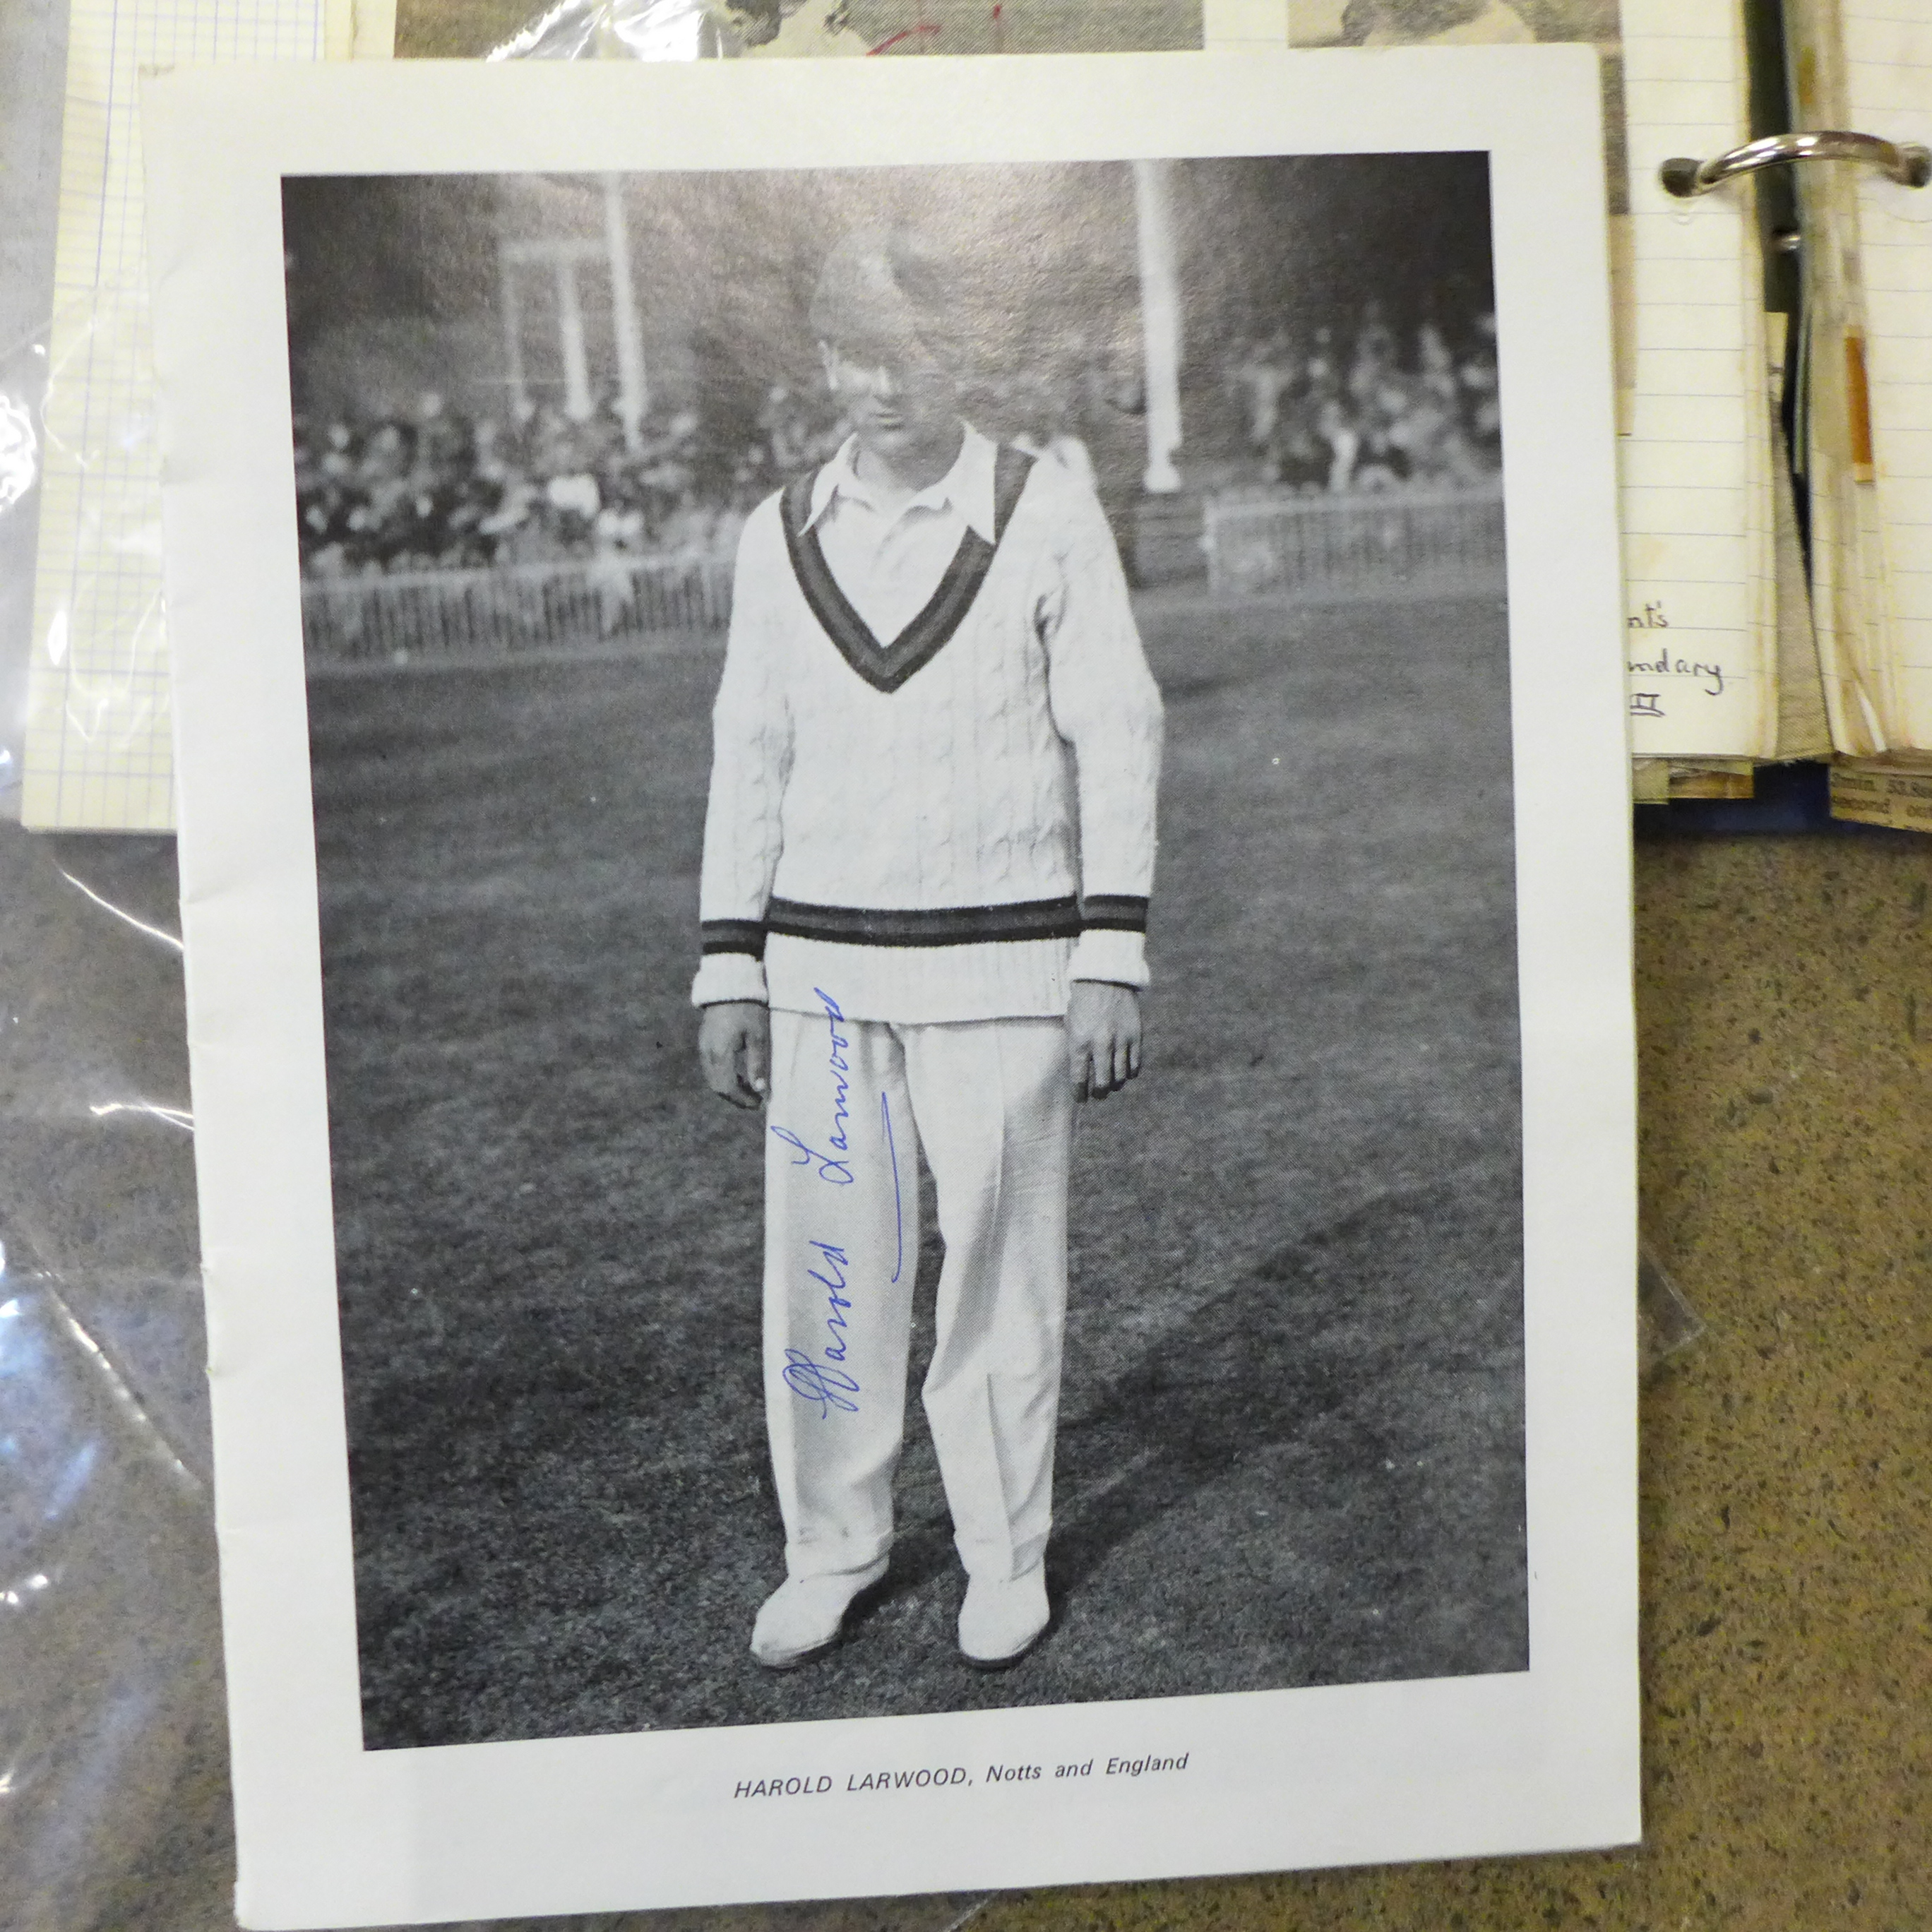 Cricket ephemera and scrap albums with autographs including Larwood, Boycott, Subba Row - Image 10 of 19